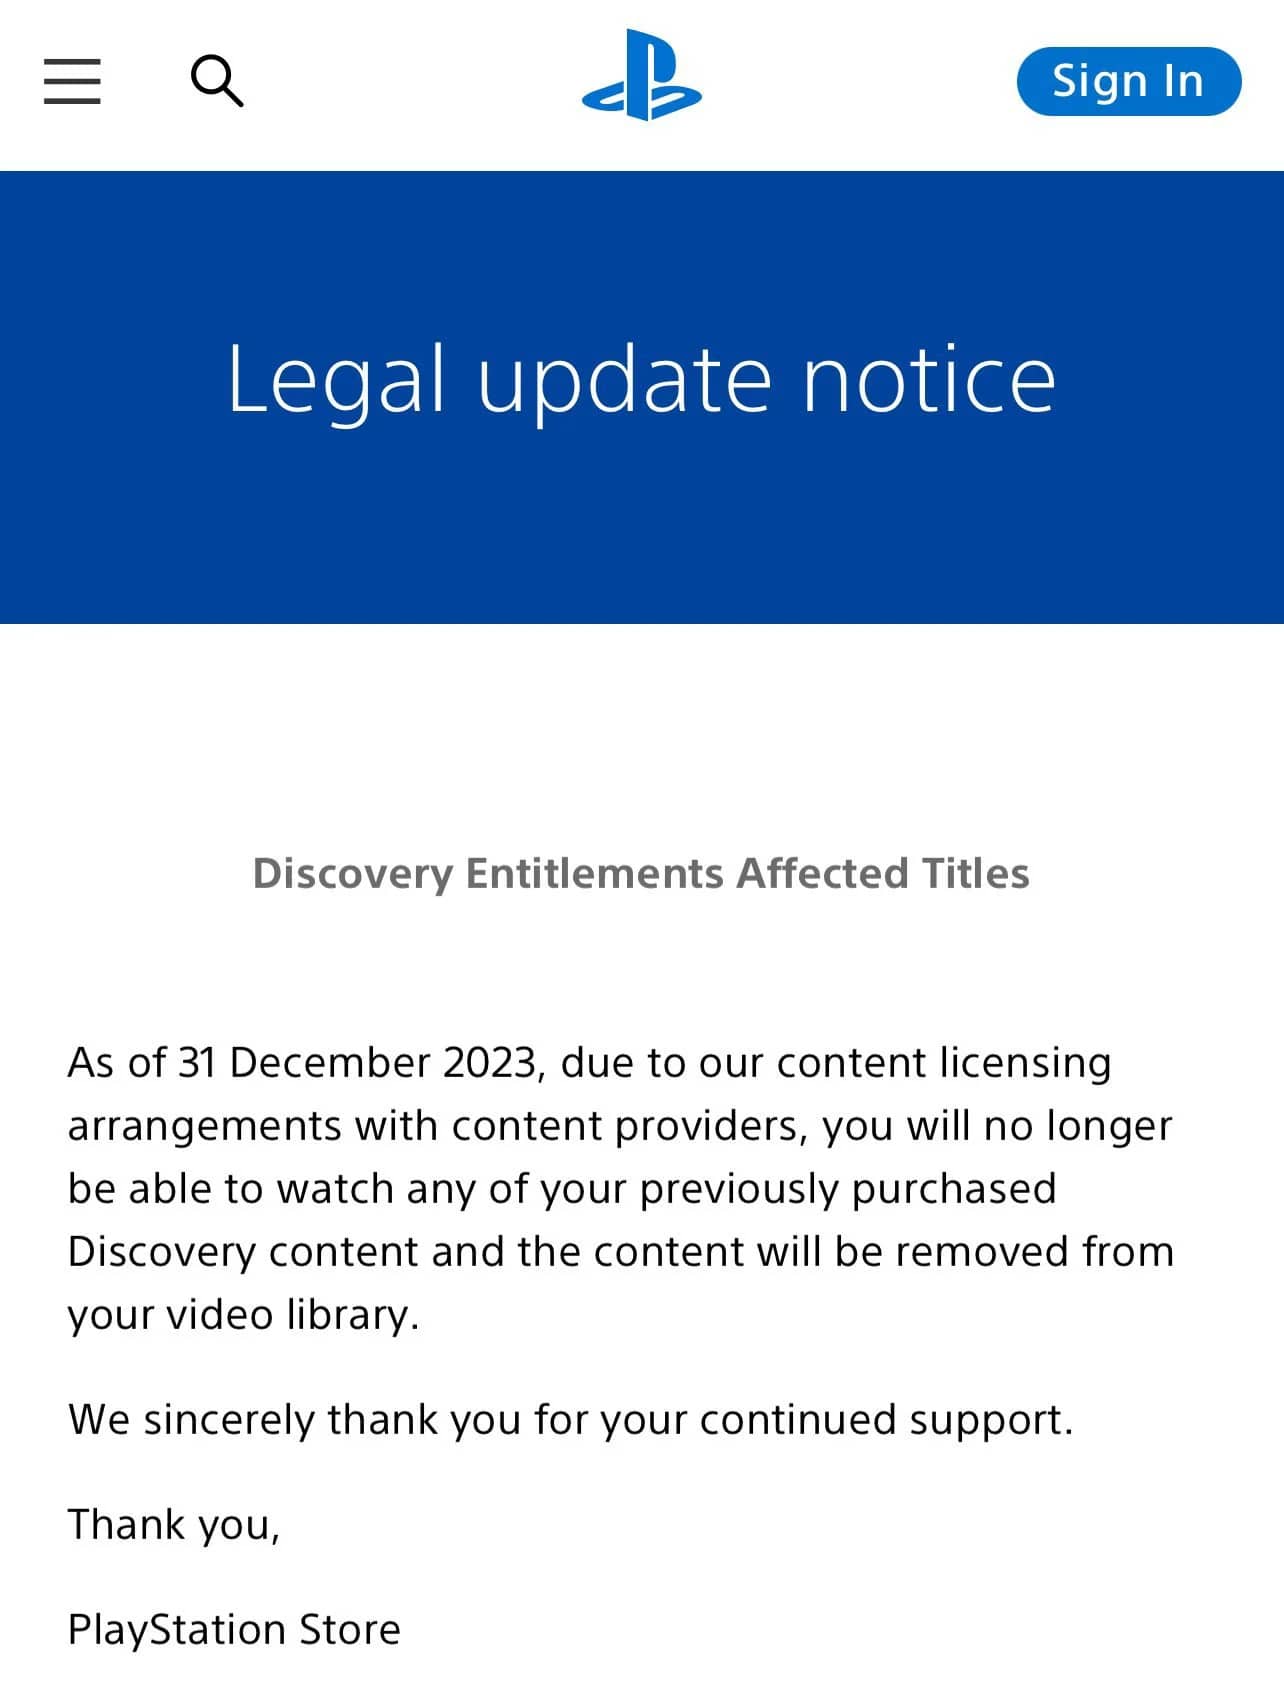 Равнодушная Sony удаляет из библиотек пользователей оплаченный контент